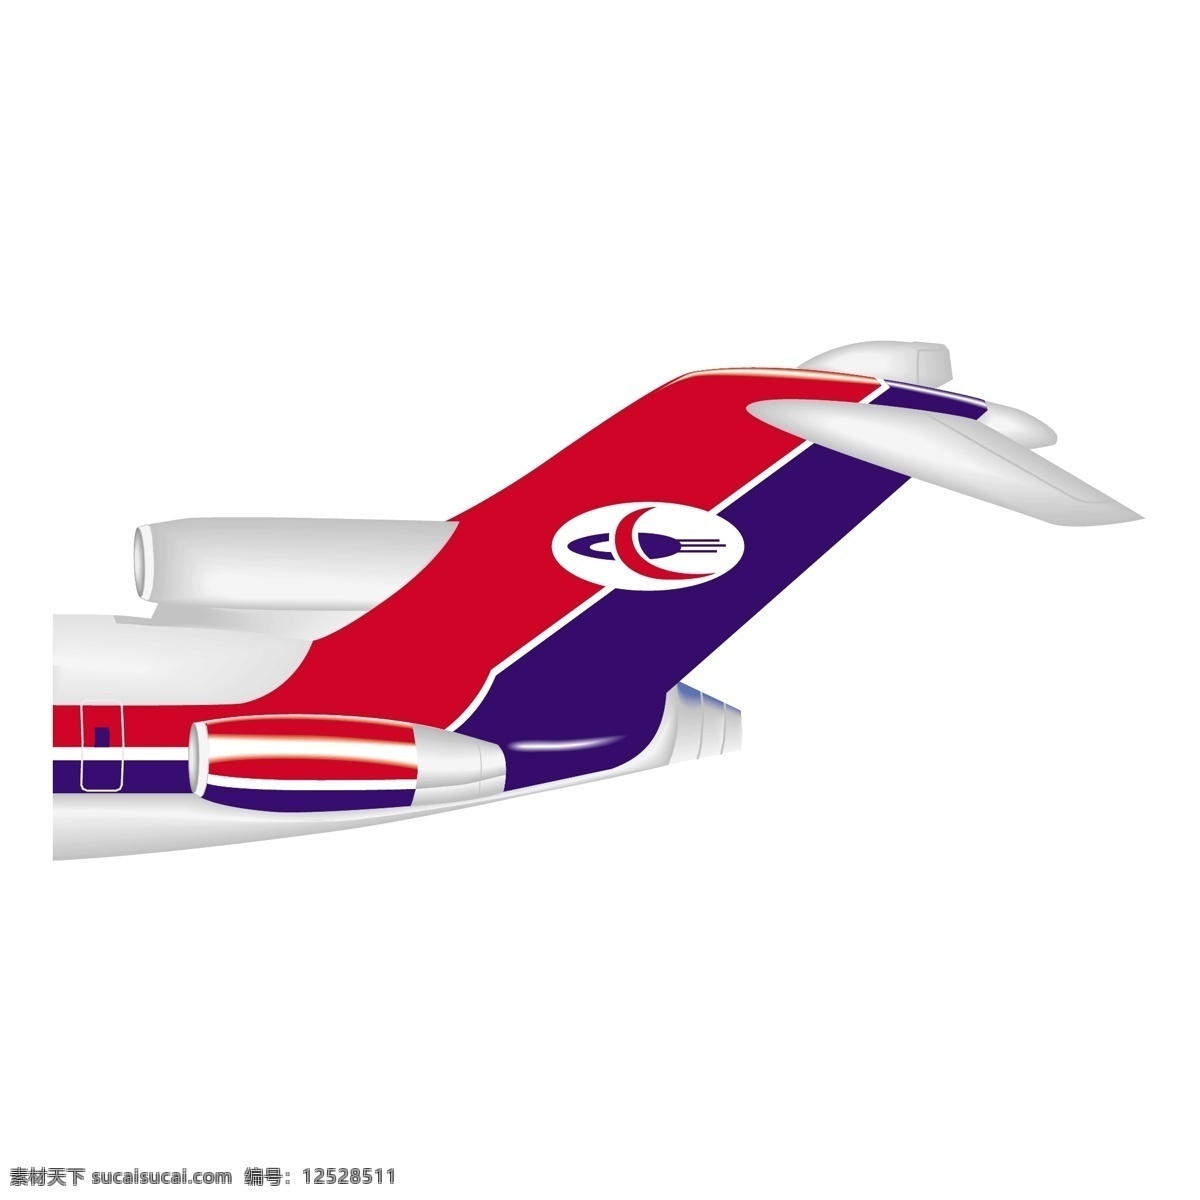 也门 航空公司 免费 标志 psd源文件 logo设计